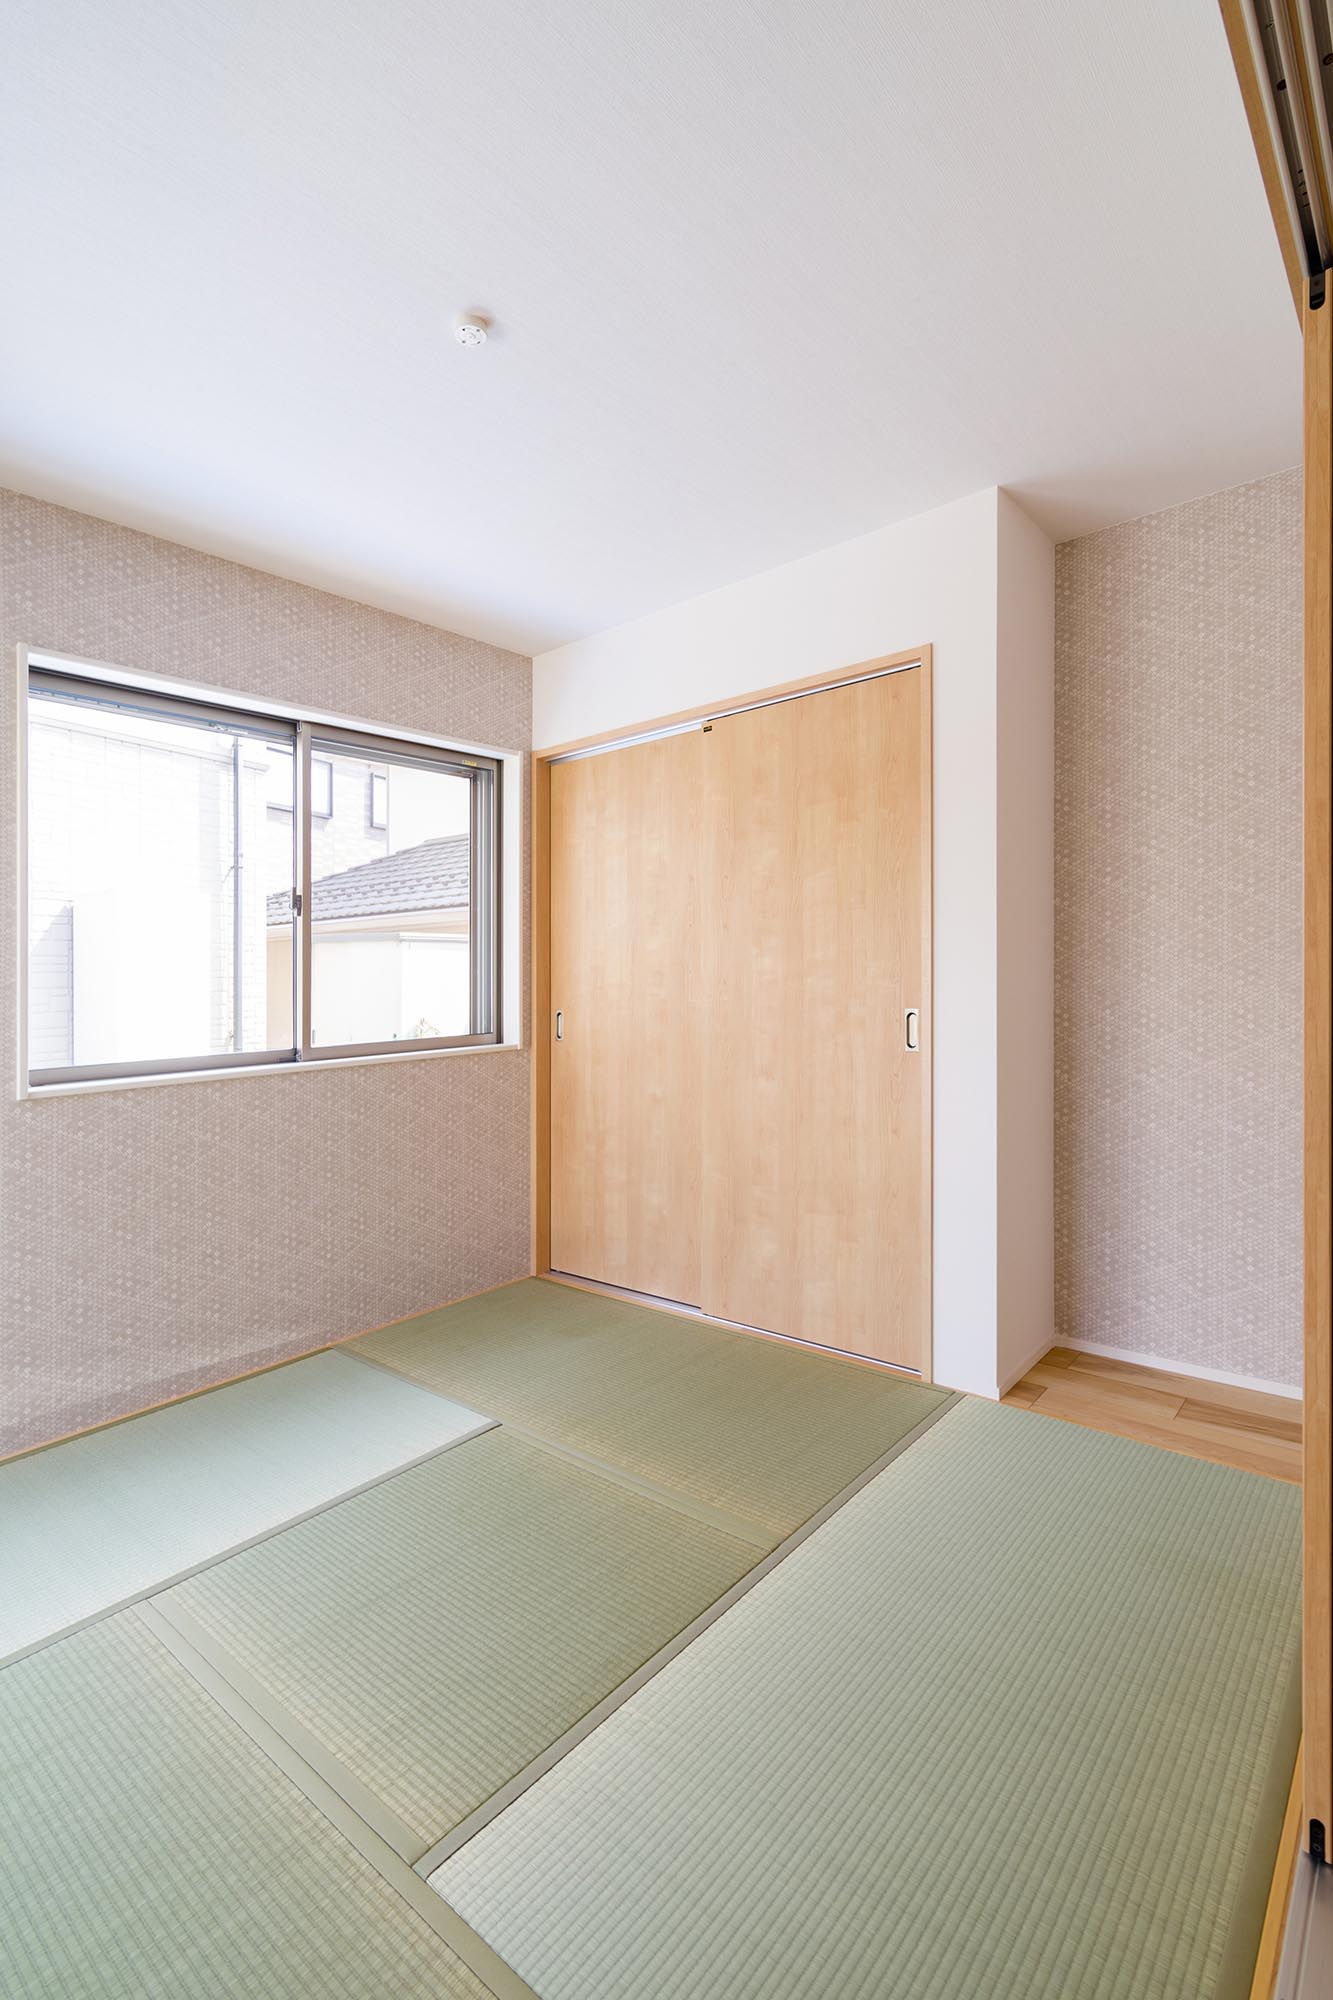 可愛い壁紙使いが好評の和室。客間にもなる和室はしっかりと扉を閉められる独立型に。床の間があるのもうれしい。